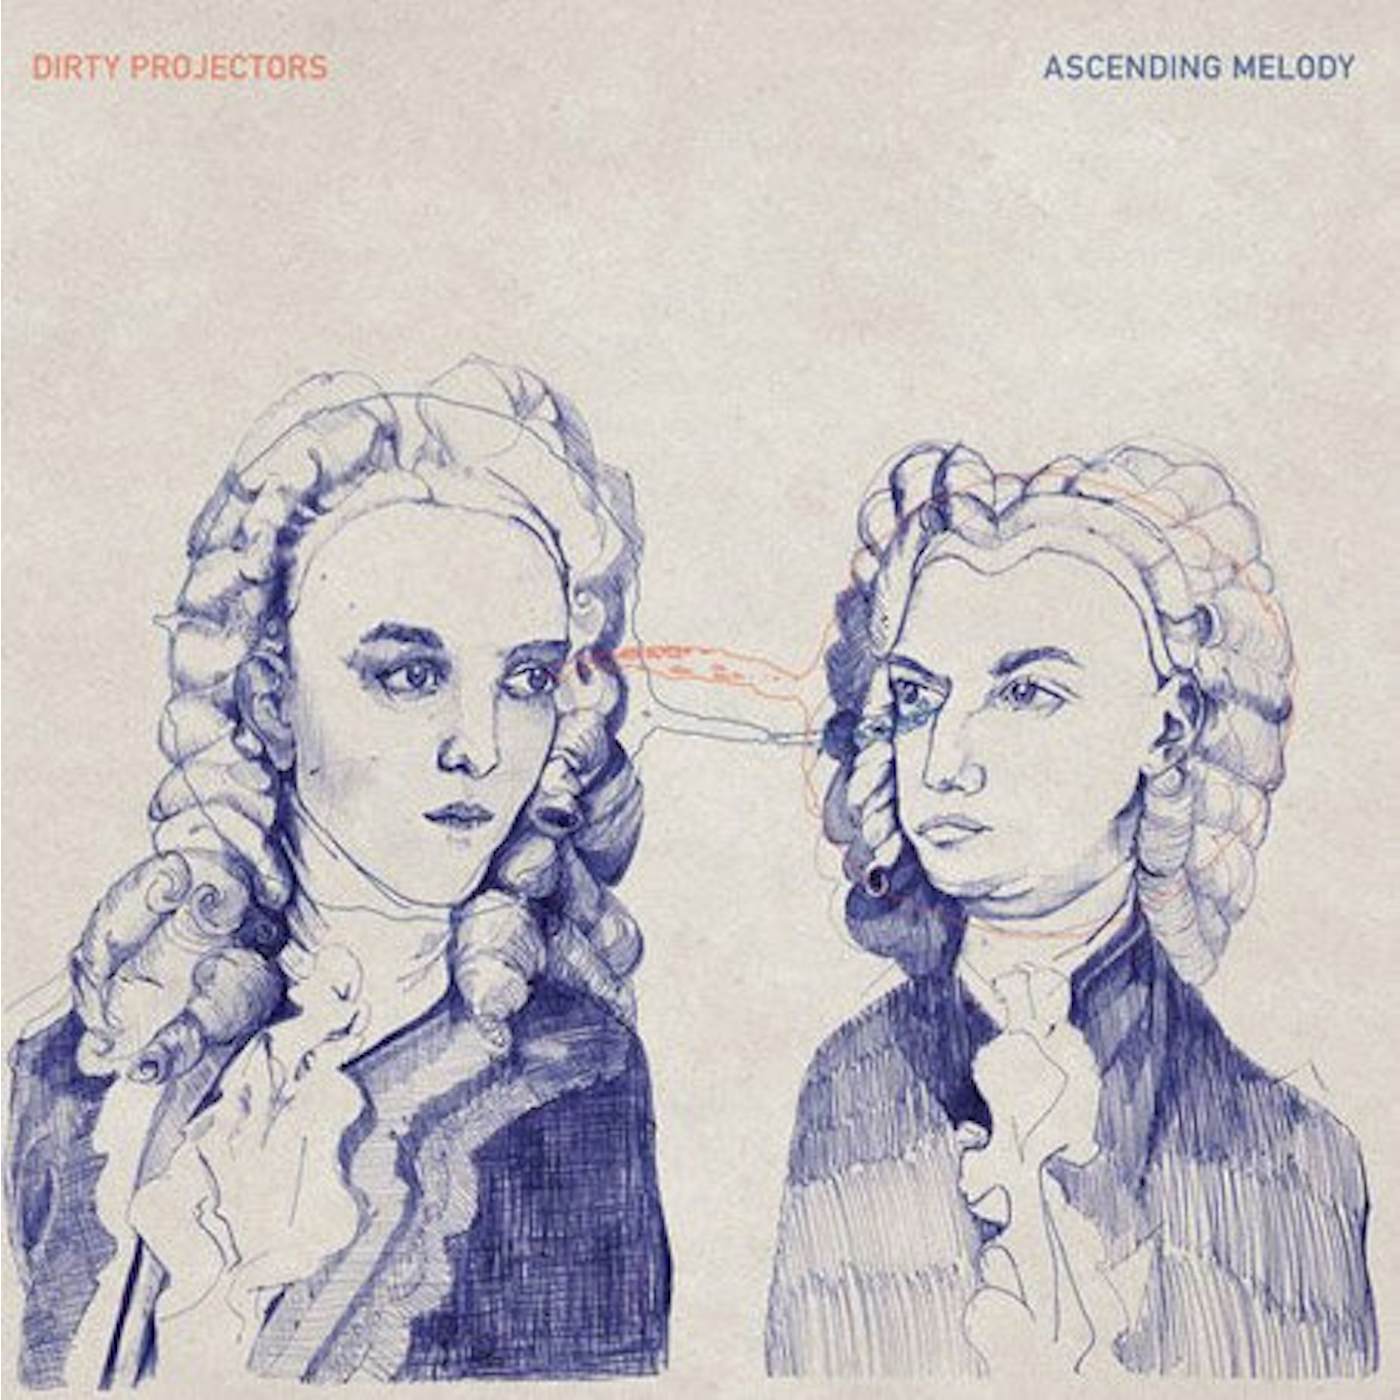 Dirty Projectors Ascending Melody Vinyl Record